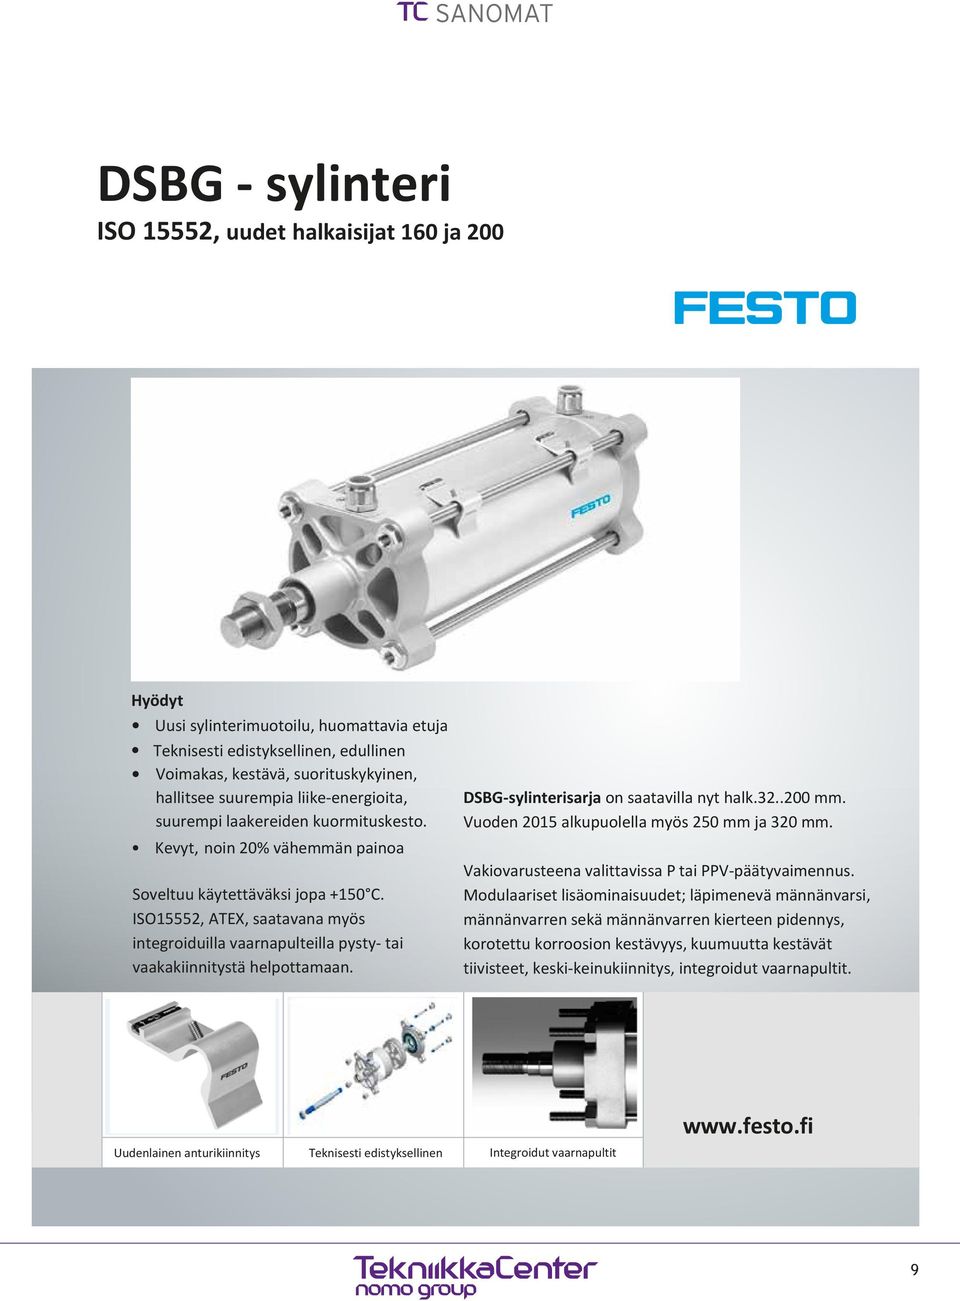 ISO15552, ATEX, saatavana myös integroiduilla vaarnapulteilla pysty- tai vaakakiinnitystä helpottamaan.. DSBG-sylinterisarja on saatavilla nyt halk.32..200 mm.